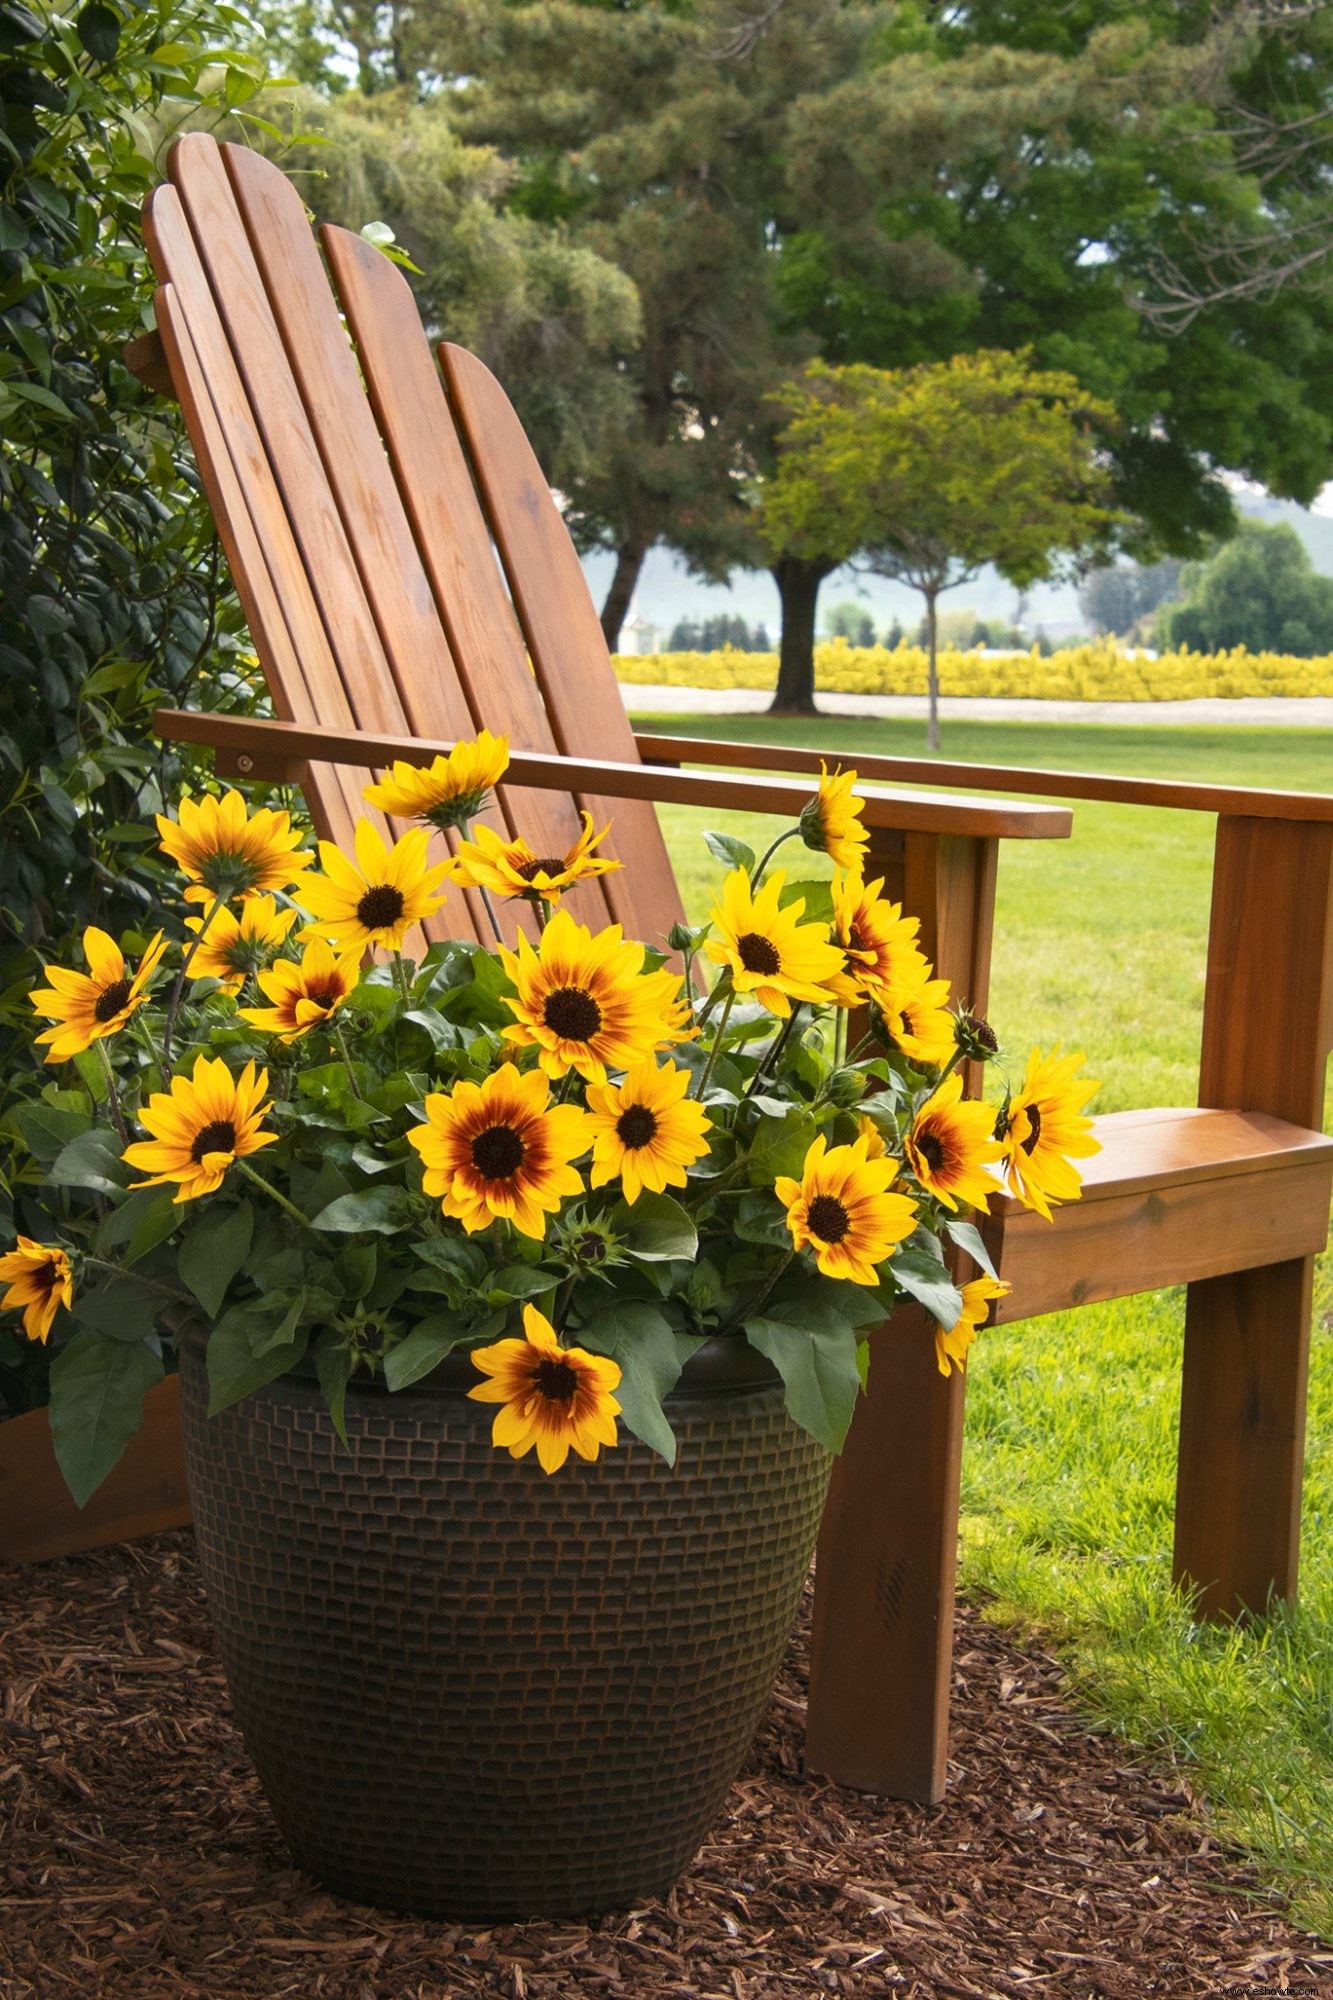 Sunbelievable Sunflower produce un espectáculo continuo de alegres flores durante toda la temporada 